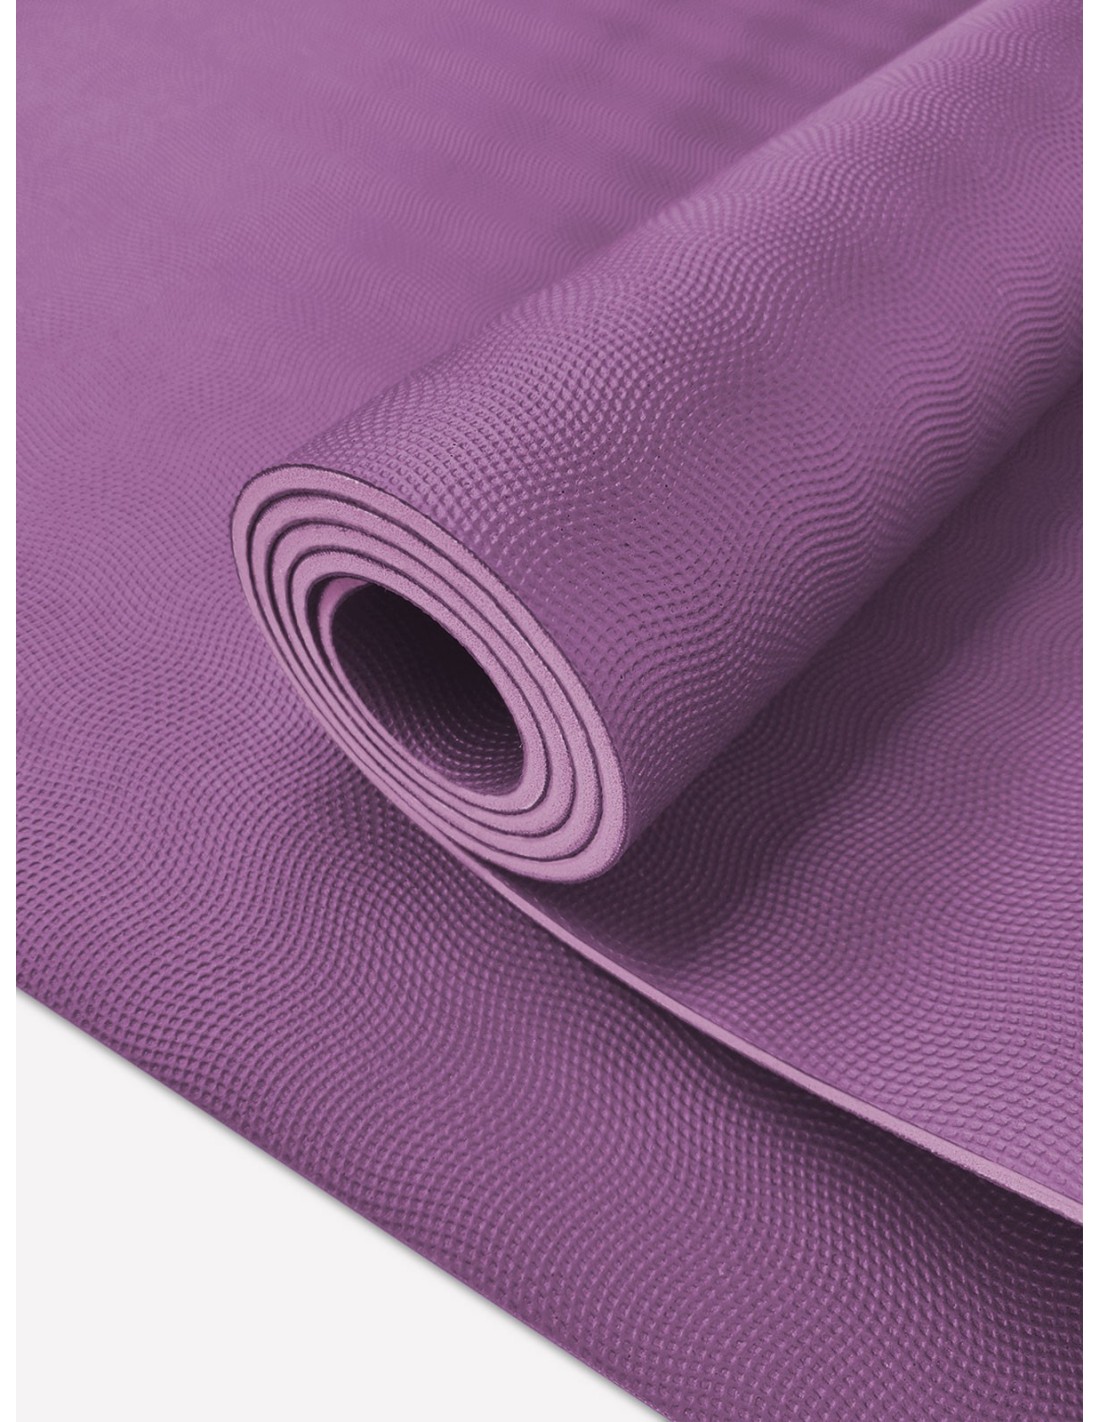 El accesorio de yoga indispensable: la manta de yoga